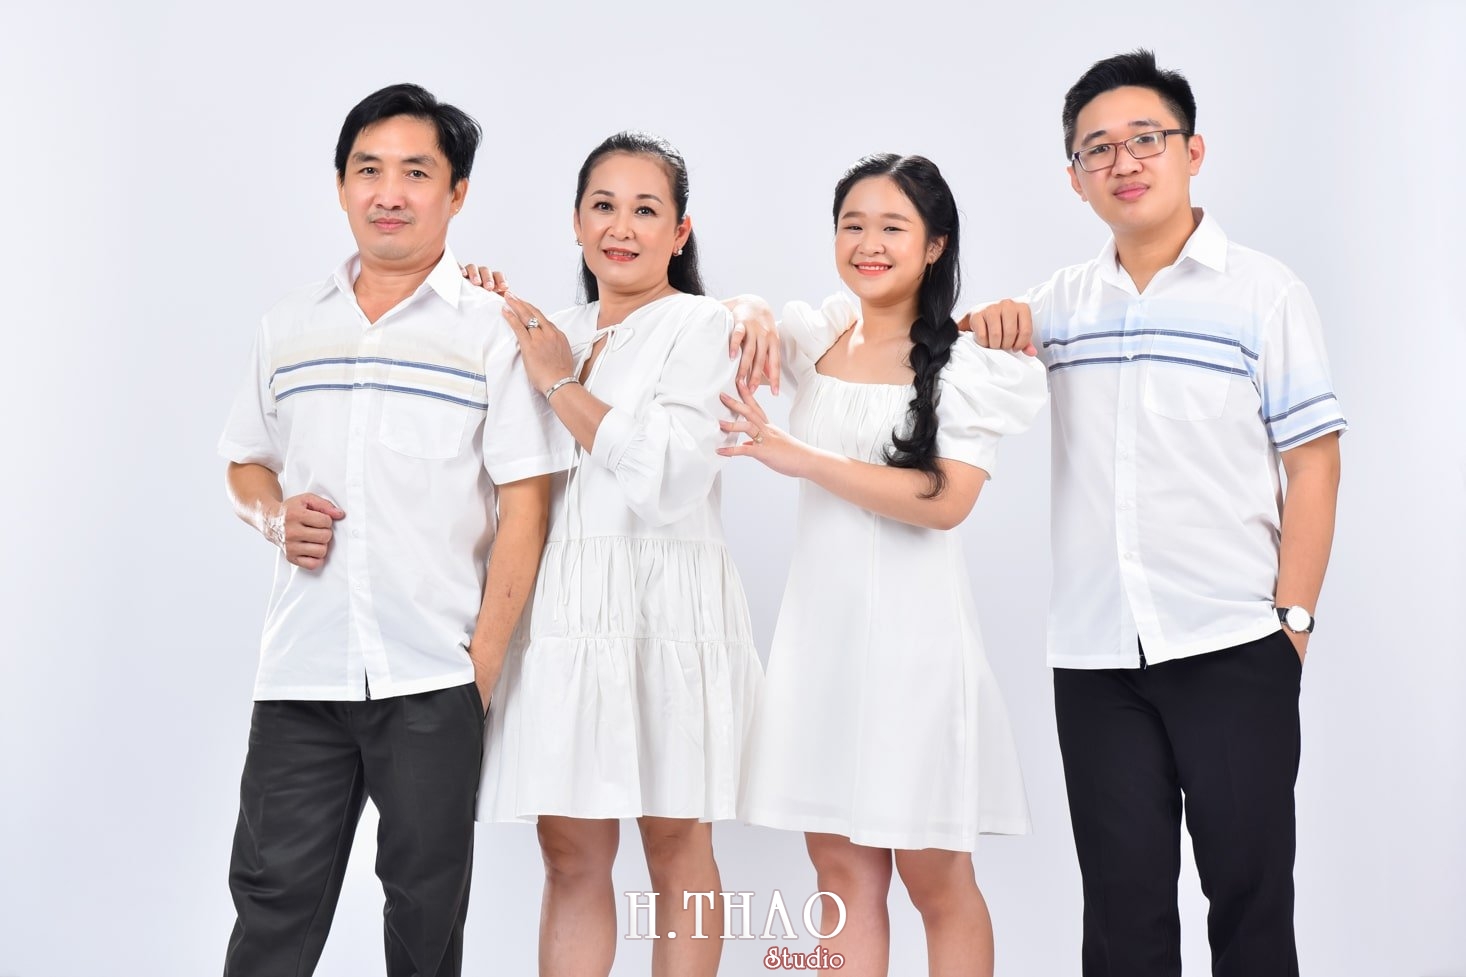 Anh gia dinh 12 min - Chụp ảnh gia đình 4 người trong studio đáng yêu - HThao Studio